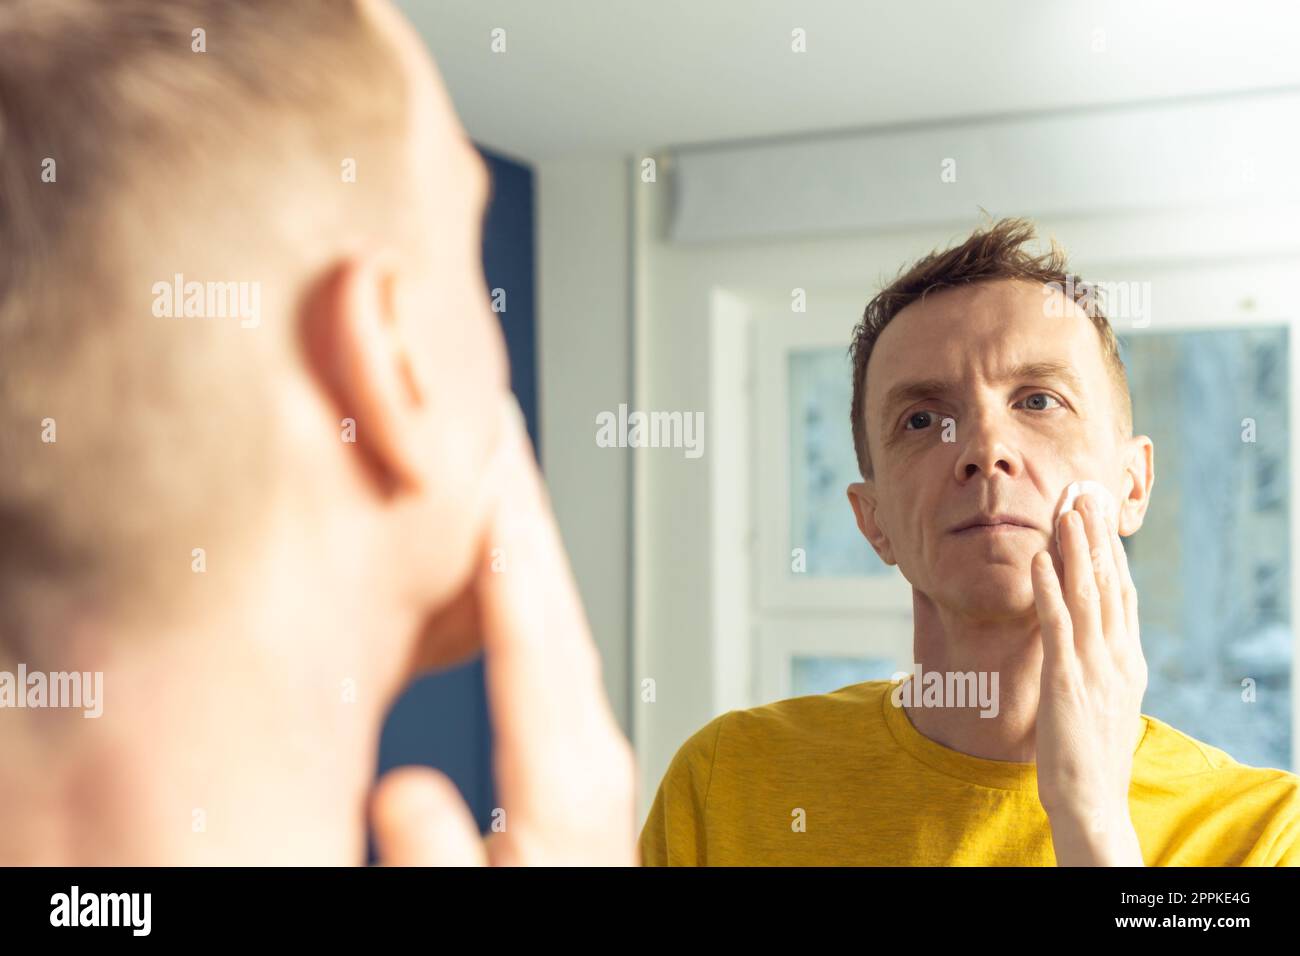 L'homme mature applique le tonique pour le visage avec un coton, puis massez avec les mains. Portrait masculin dans le miroir. Nettoyage du visage, lavage. Banque D'Images